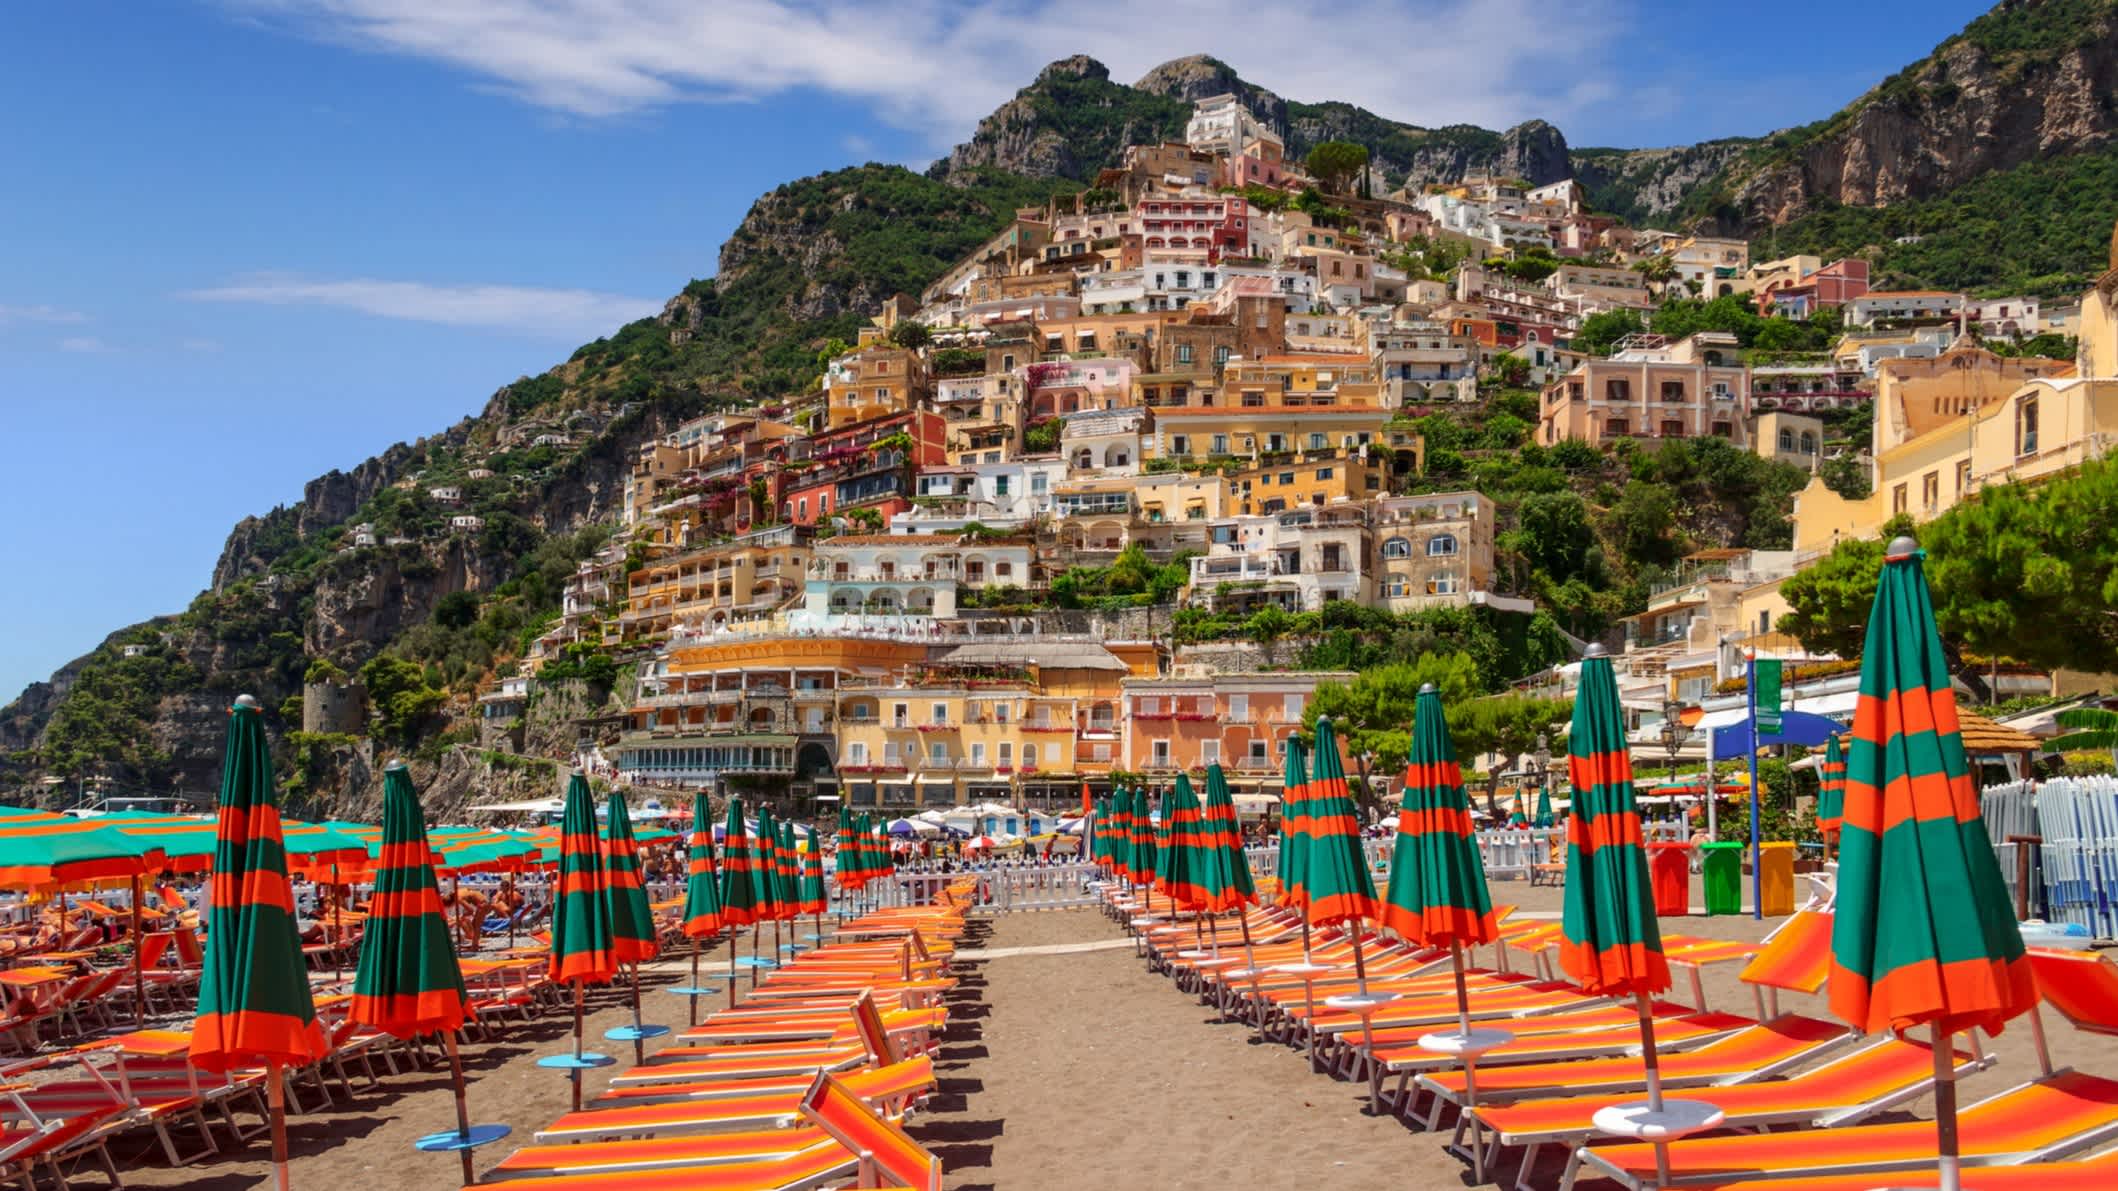 Vue sur la plage Spiaggia Grande et les parasols et chaises longues colorés avec la montagne en arrière-plan, sur la côte Amalfitaine, en Italie.